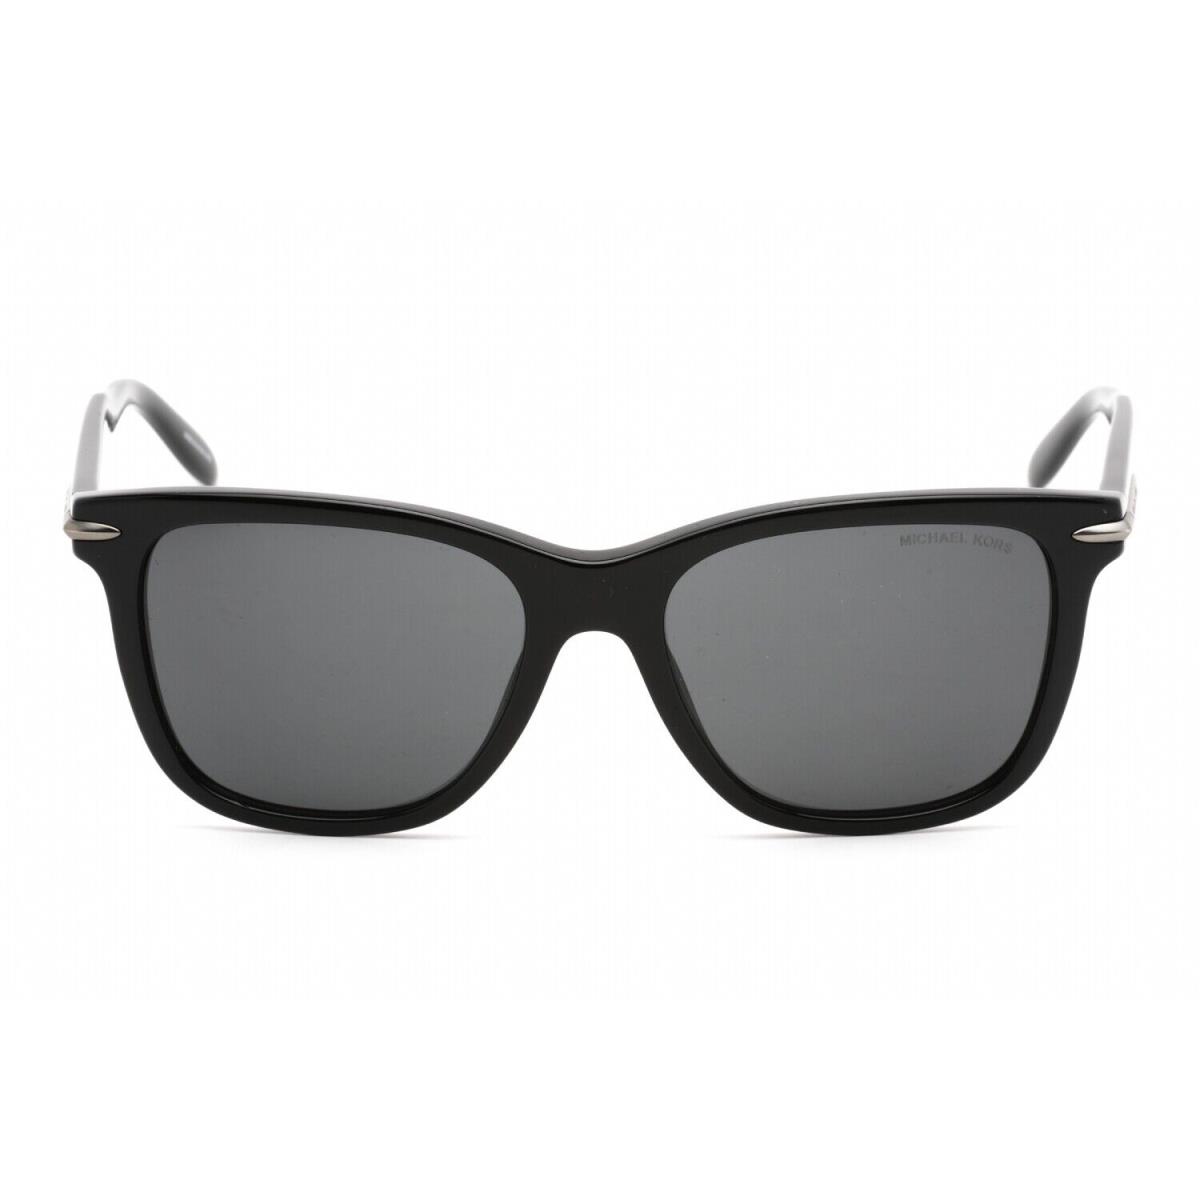 Michael Kors MK2178 300587 Sunglasses Black Frame Dark Grey Lenses 54mm